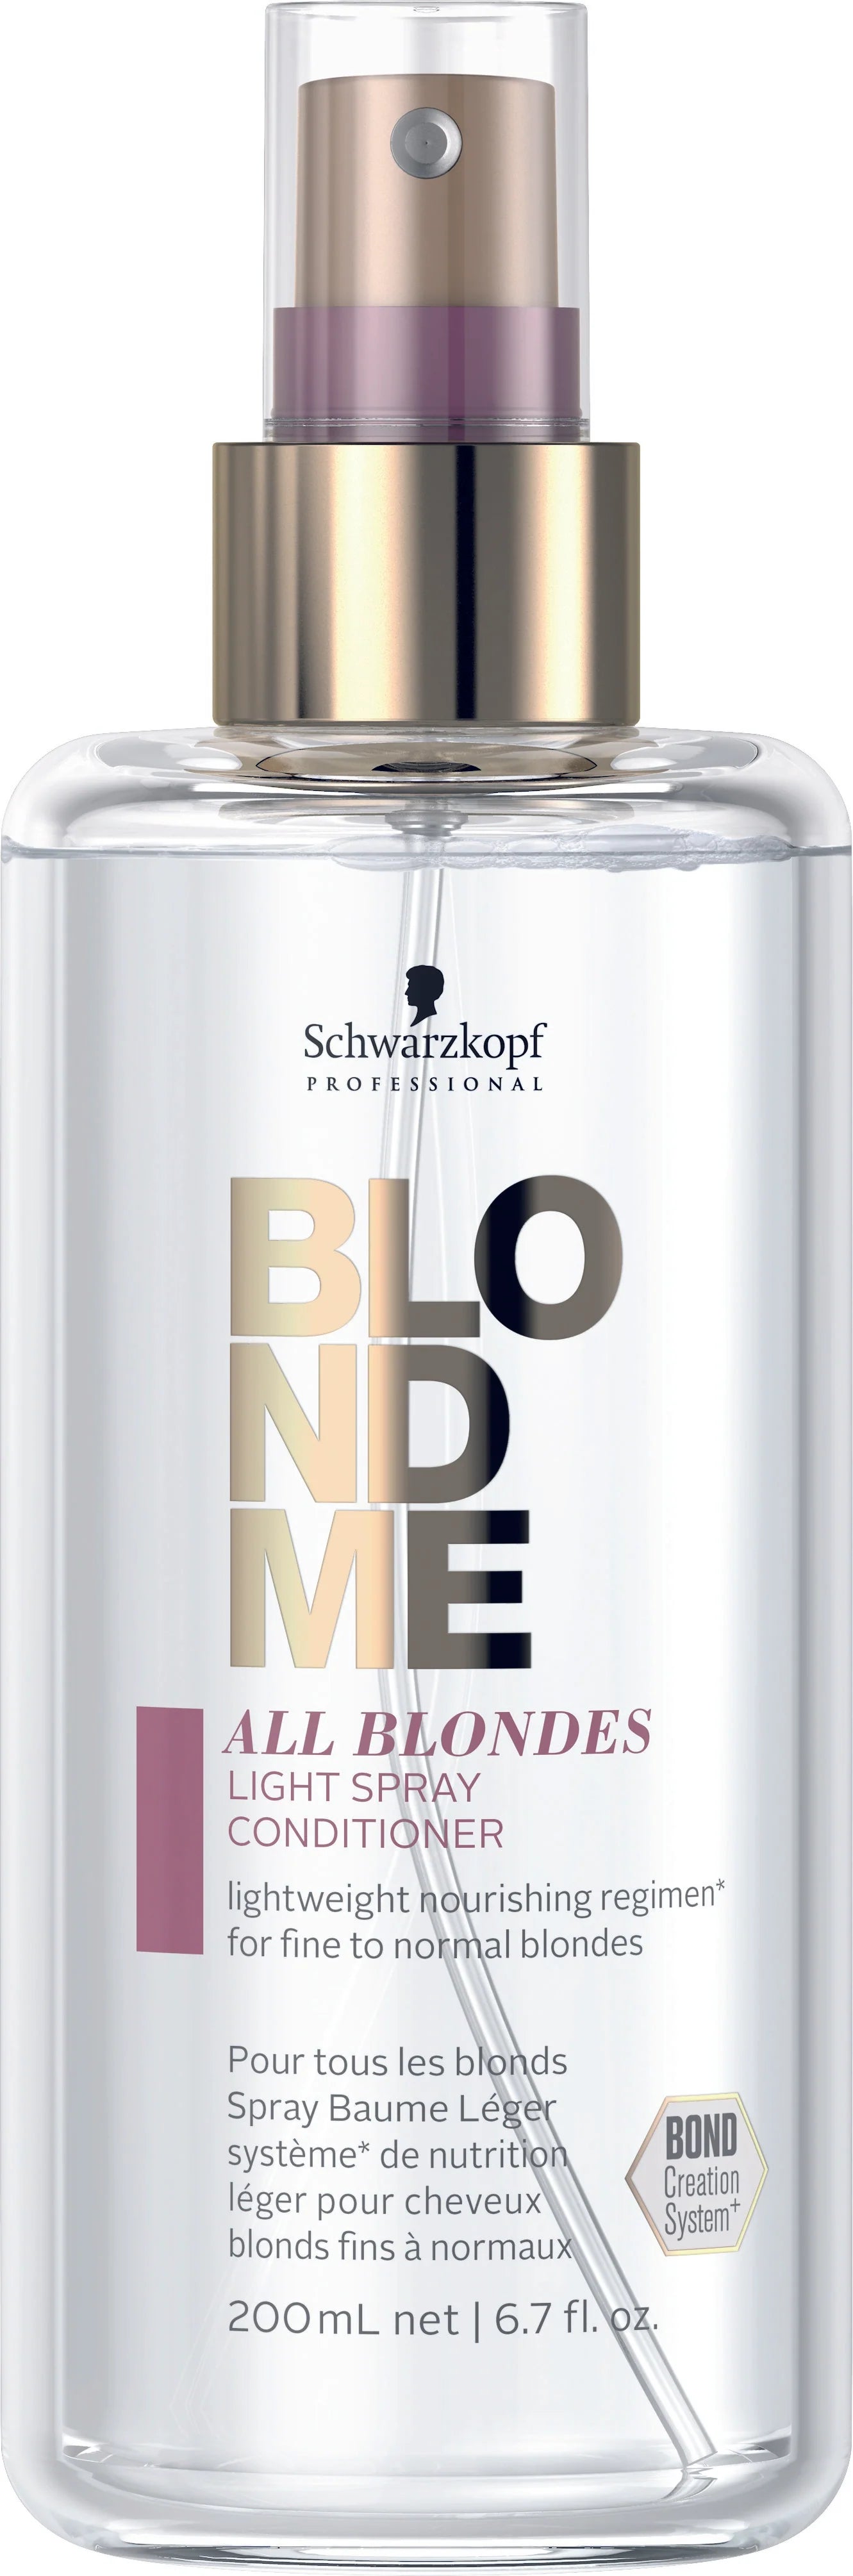 Schwarzkopf Professional Blondme All Blondes Light Spray Conditioner - 200ml